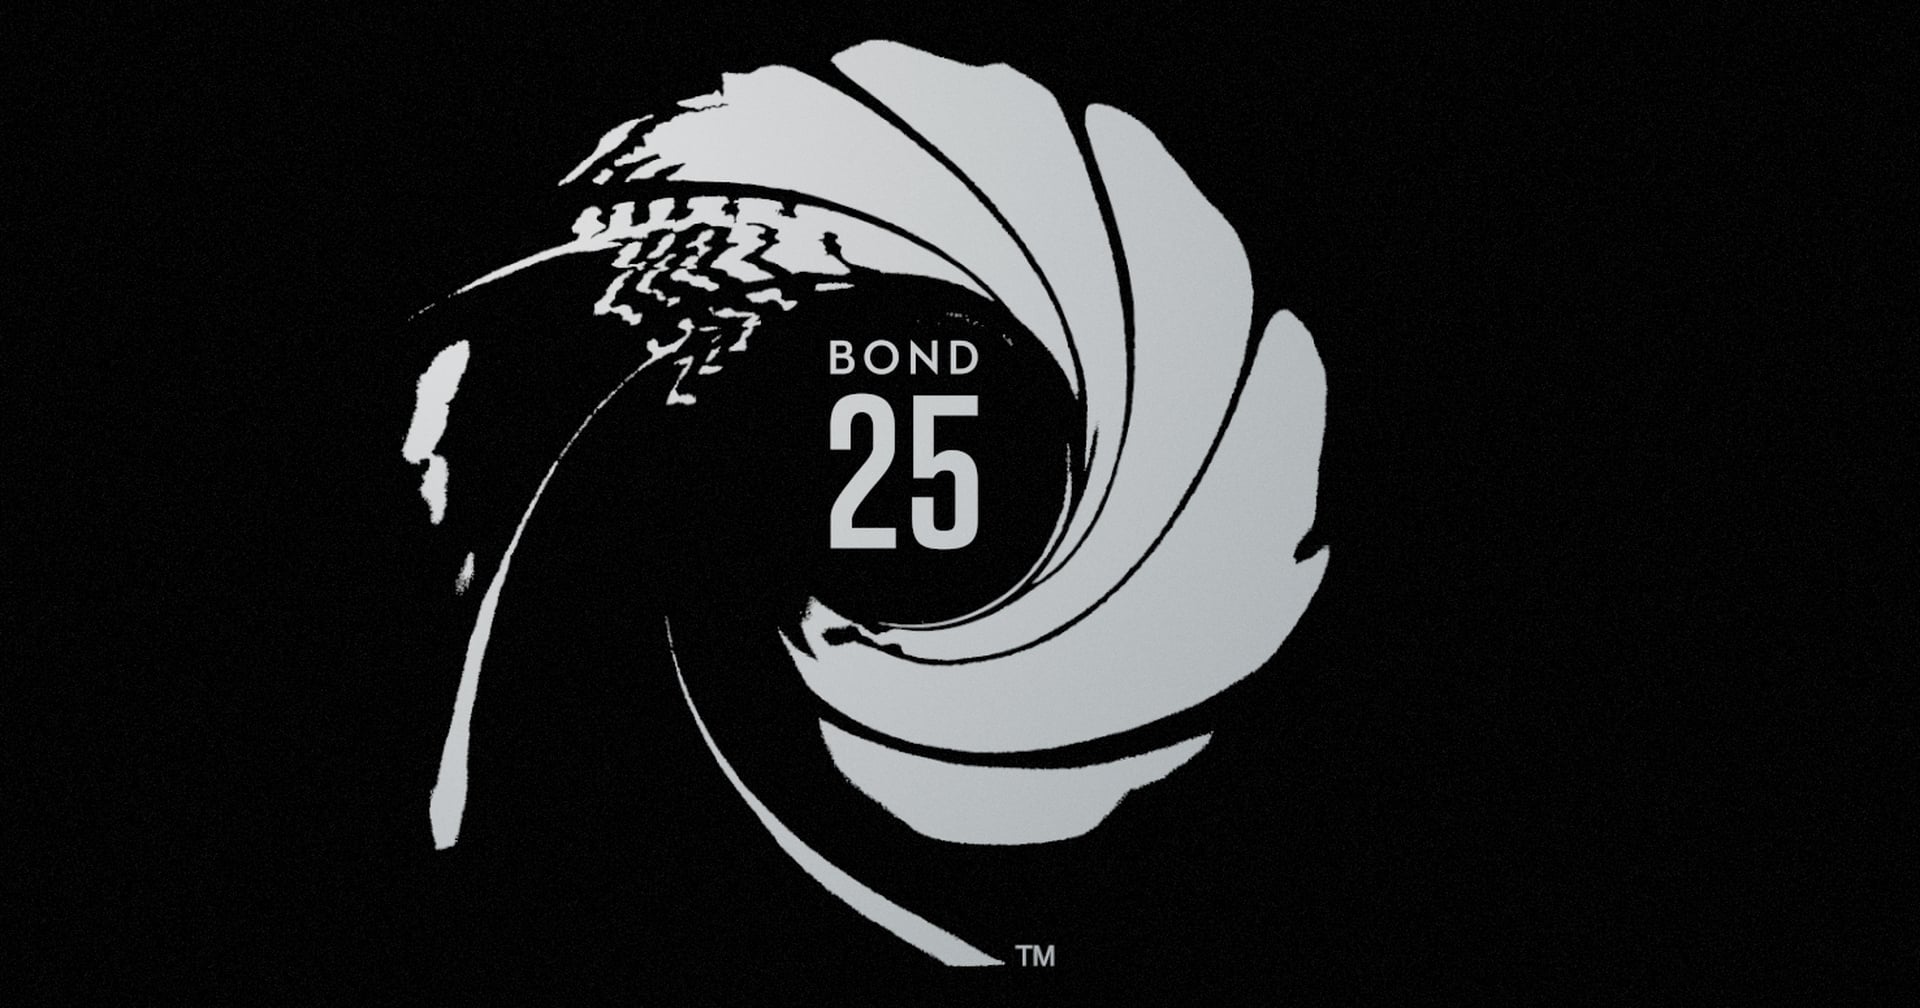 Bond 25 No Time to Die Movie Details | POPSUGAR Entertainment